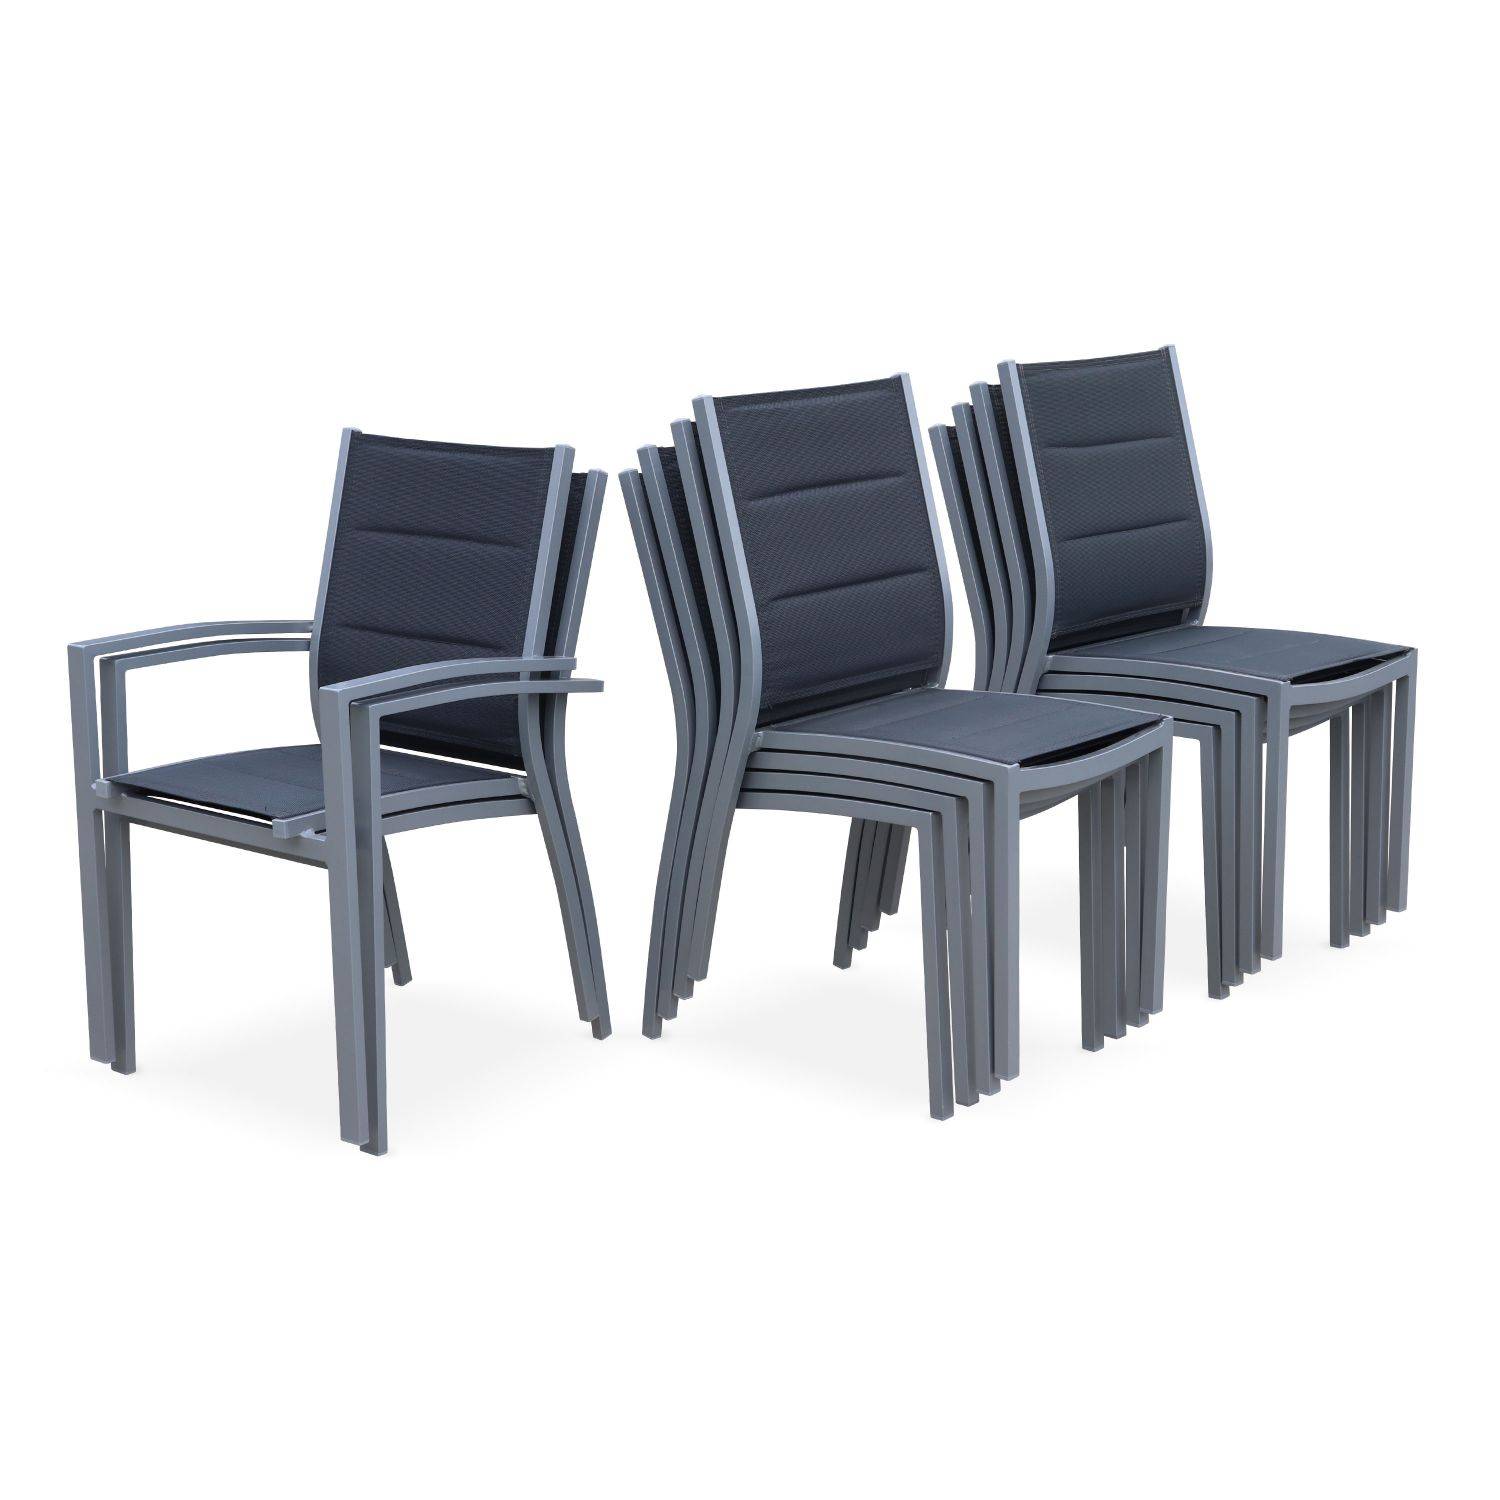 Tuinset Odenton, 1 uitschuifbare tafel, 2 fauteuils, 8 stoelen van aluminium en textileen Photo7